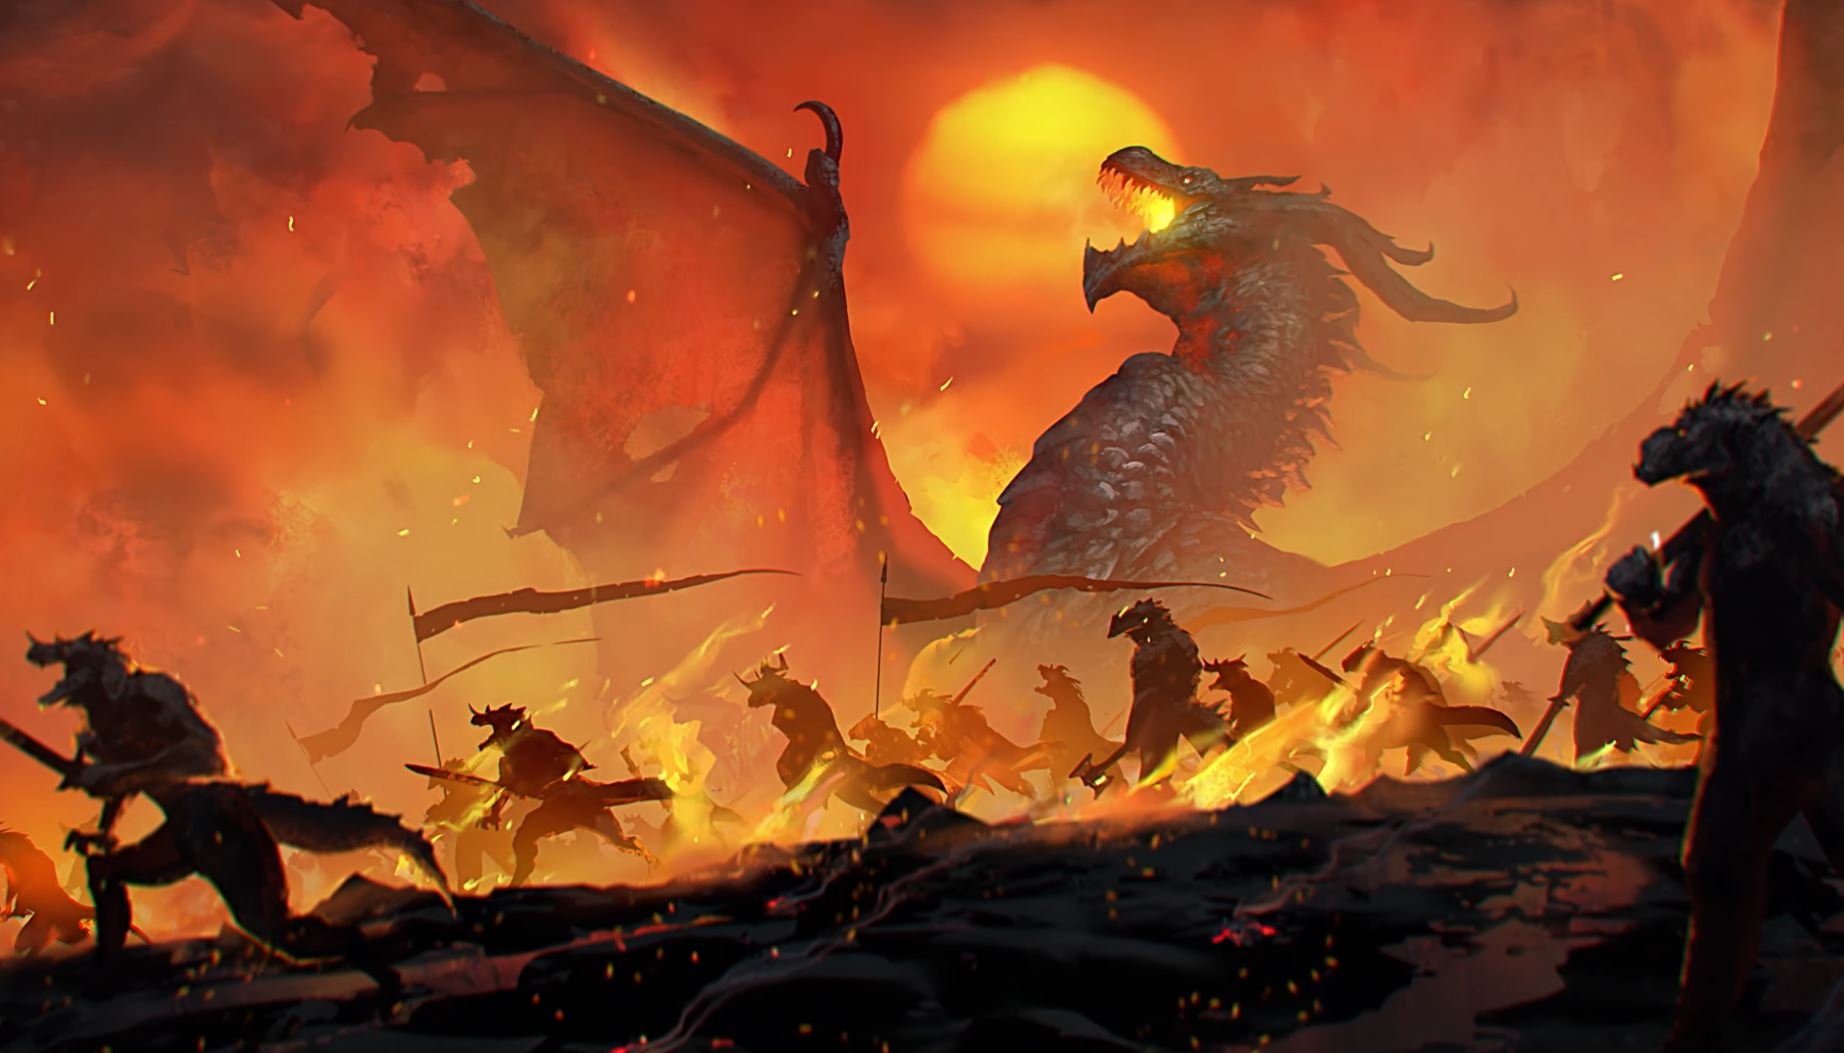 Тактическая стратегия Age of Wonders 4 получила обновление "Рассвет драконов" (Dragon Dawn)